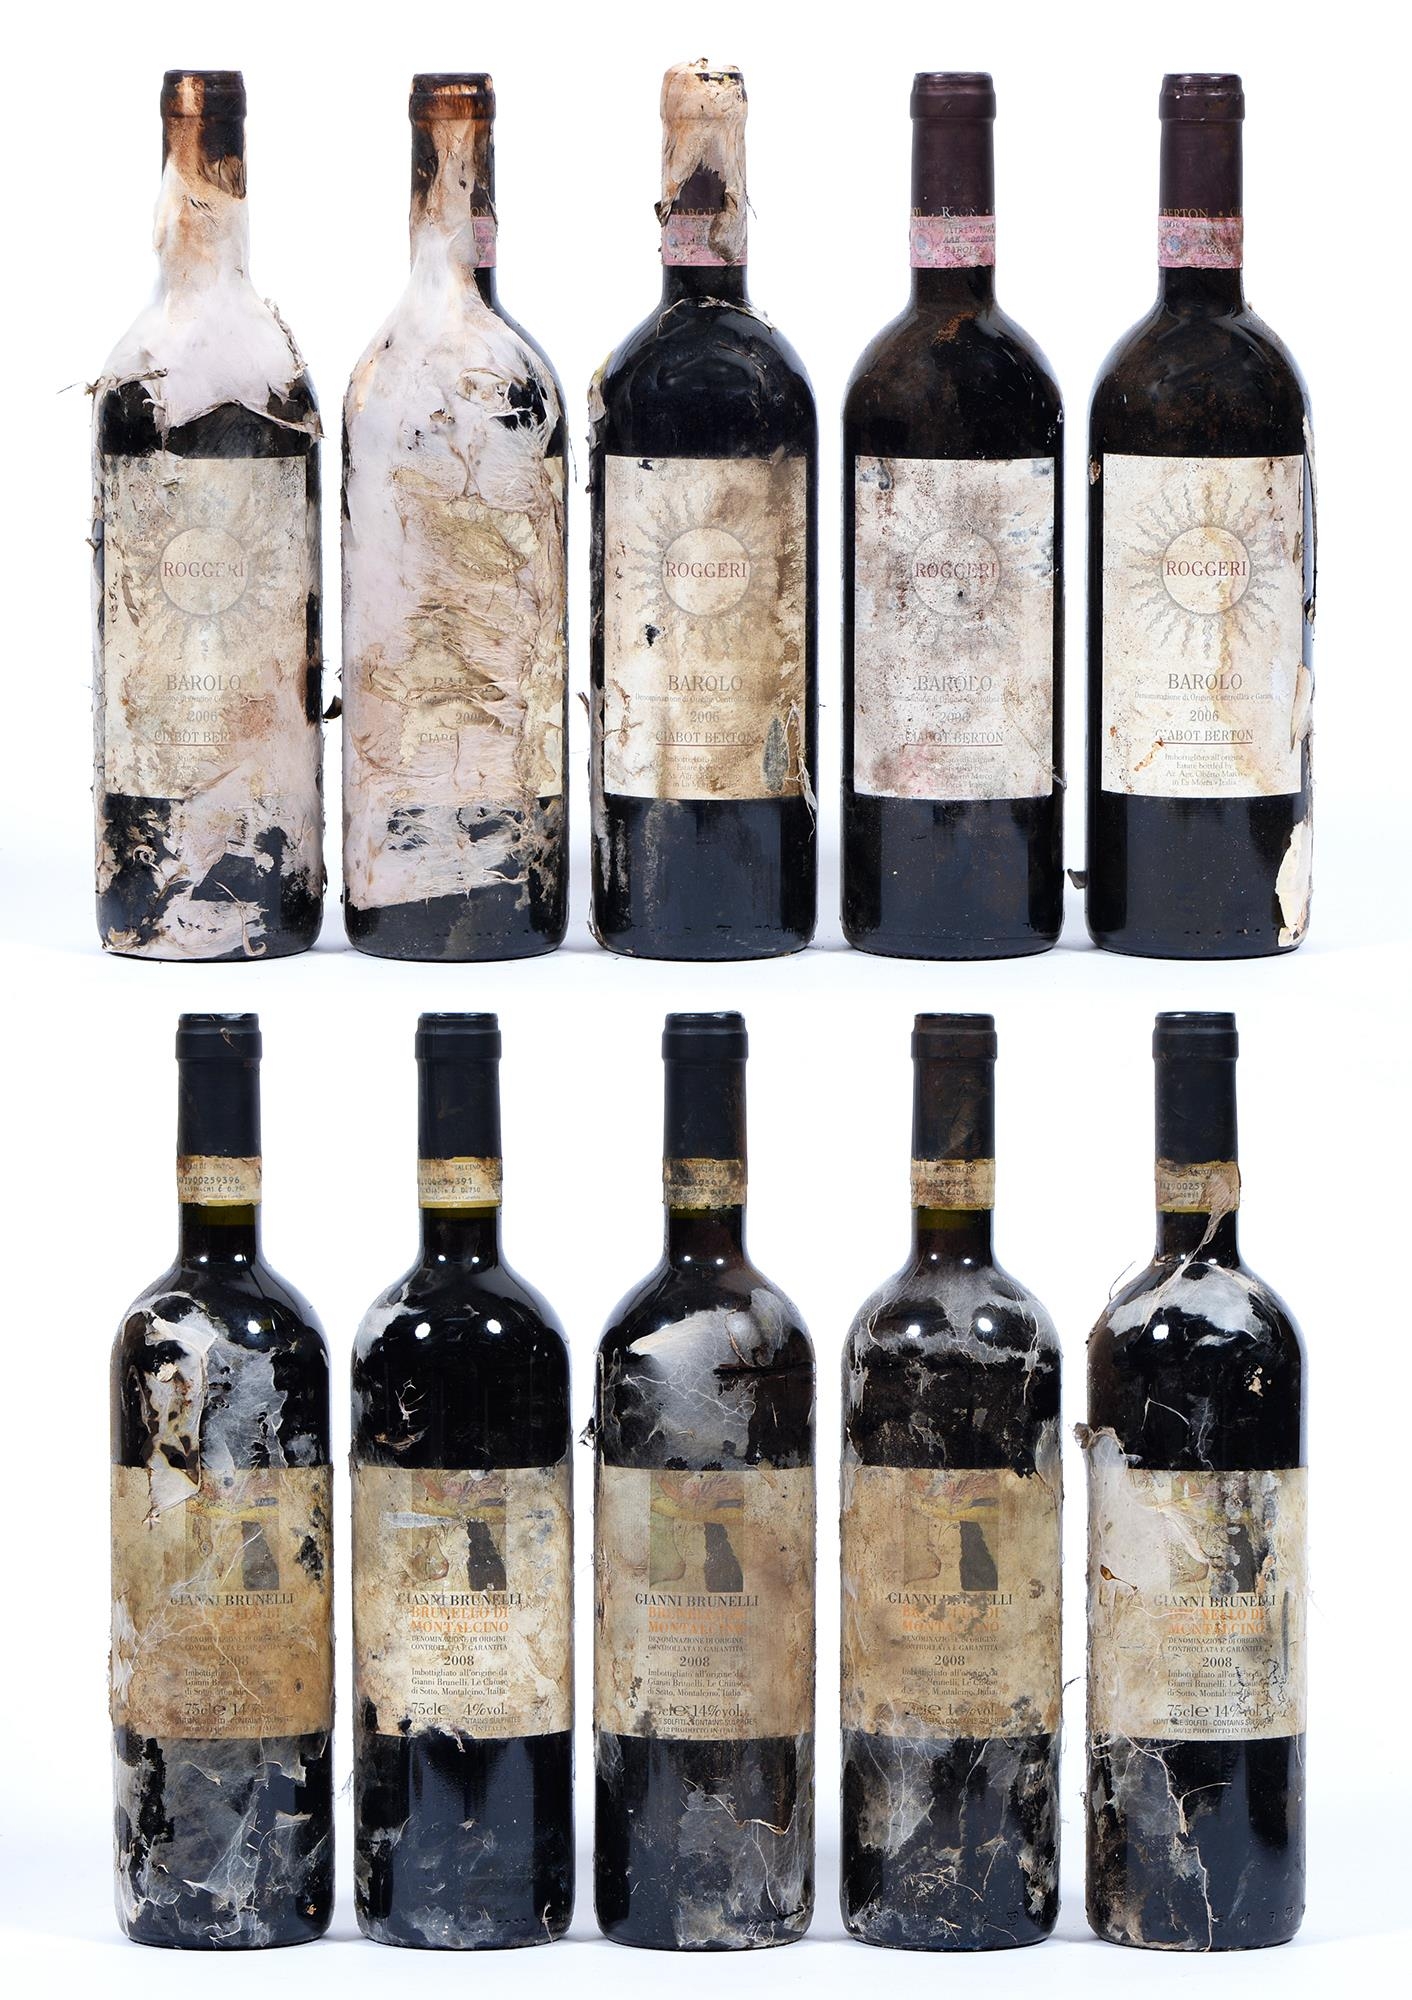 Roggeri Barolo, 2006, Ciabot Berton, five bottles, Gianni Brunelli, 2008 Brunello di Montalcino,